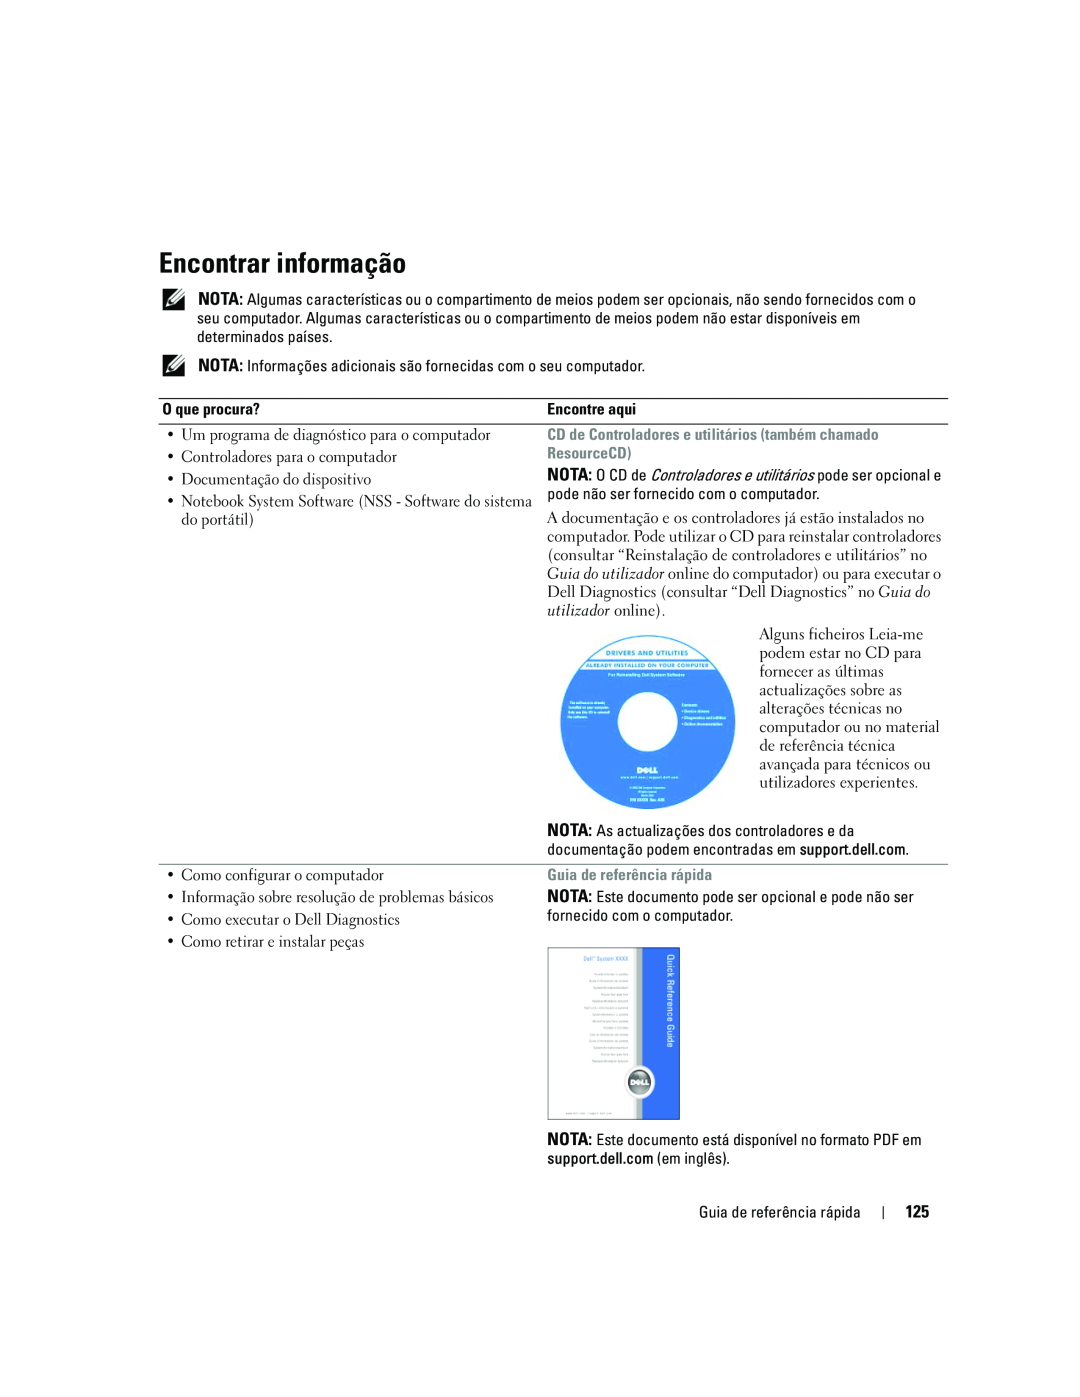 Dell ATG D620 manual Encontrar informação, CD de Controladores e utilitários também chamado, ResourceCD 